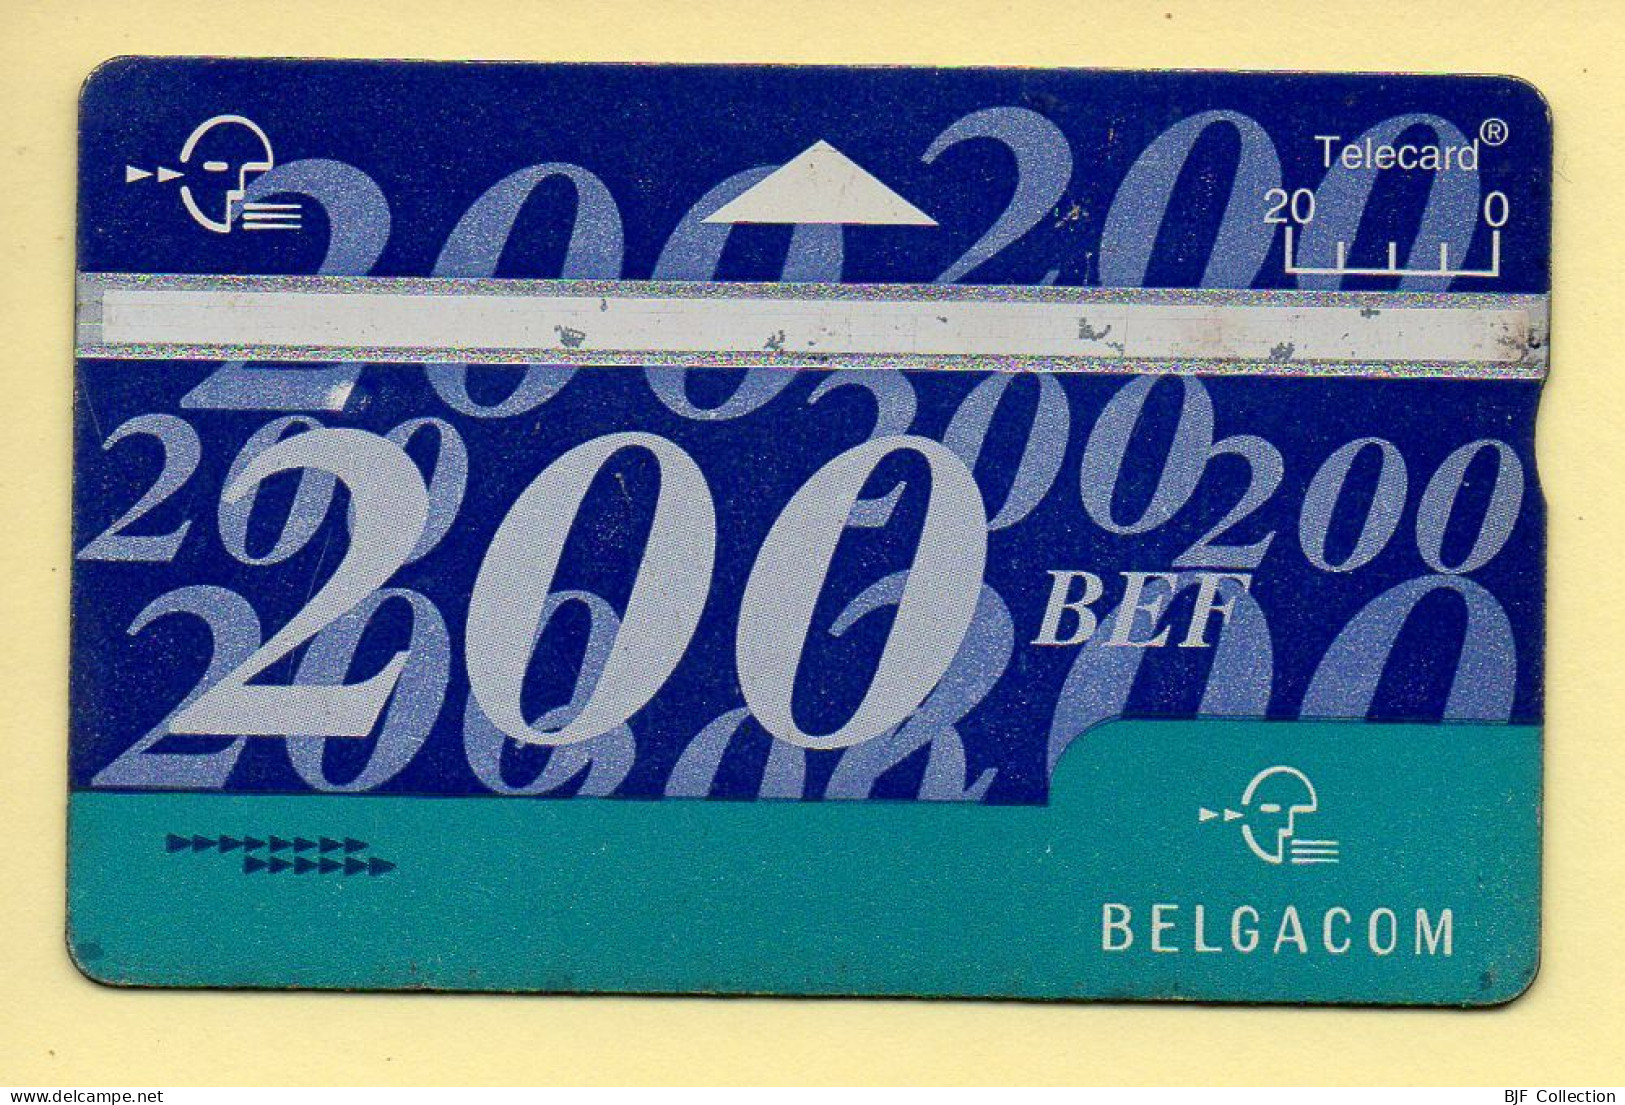 Télécarte : Belgique : BELGACOM / 200 BEF - Zonder Chip